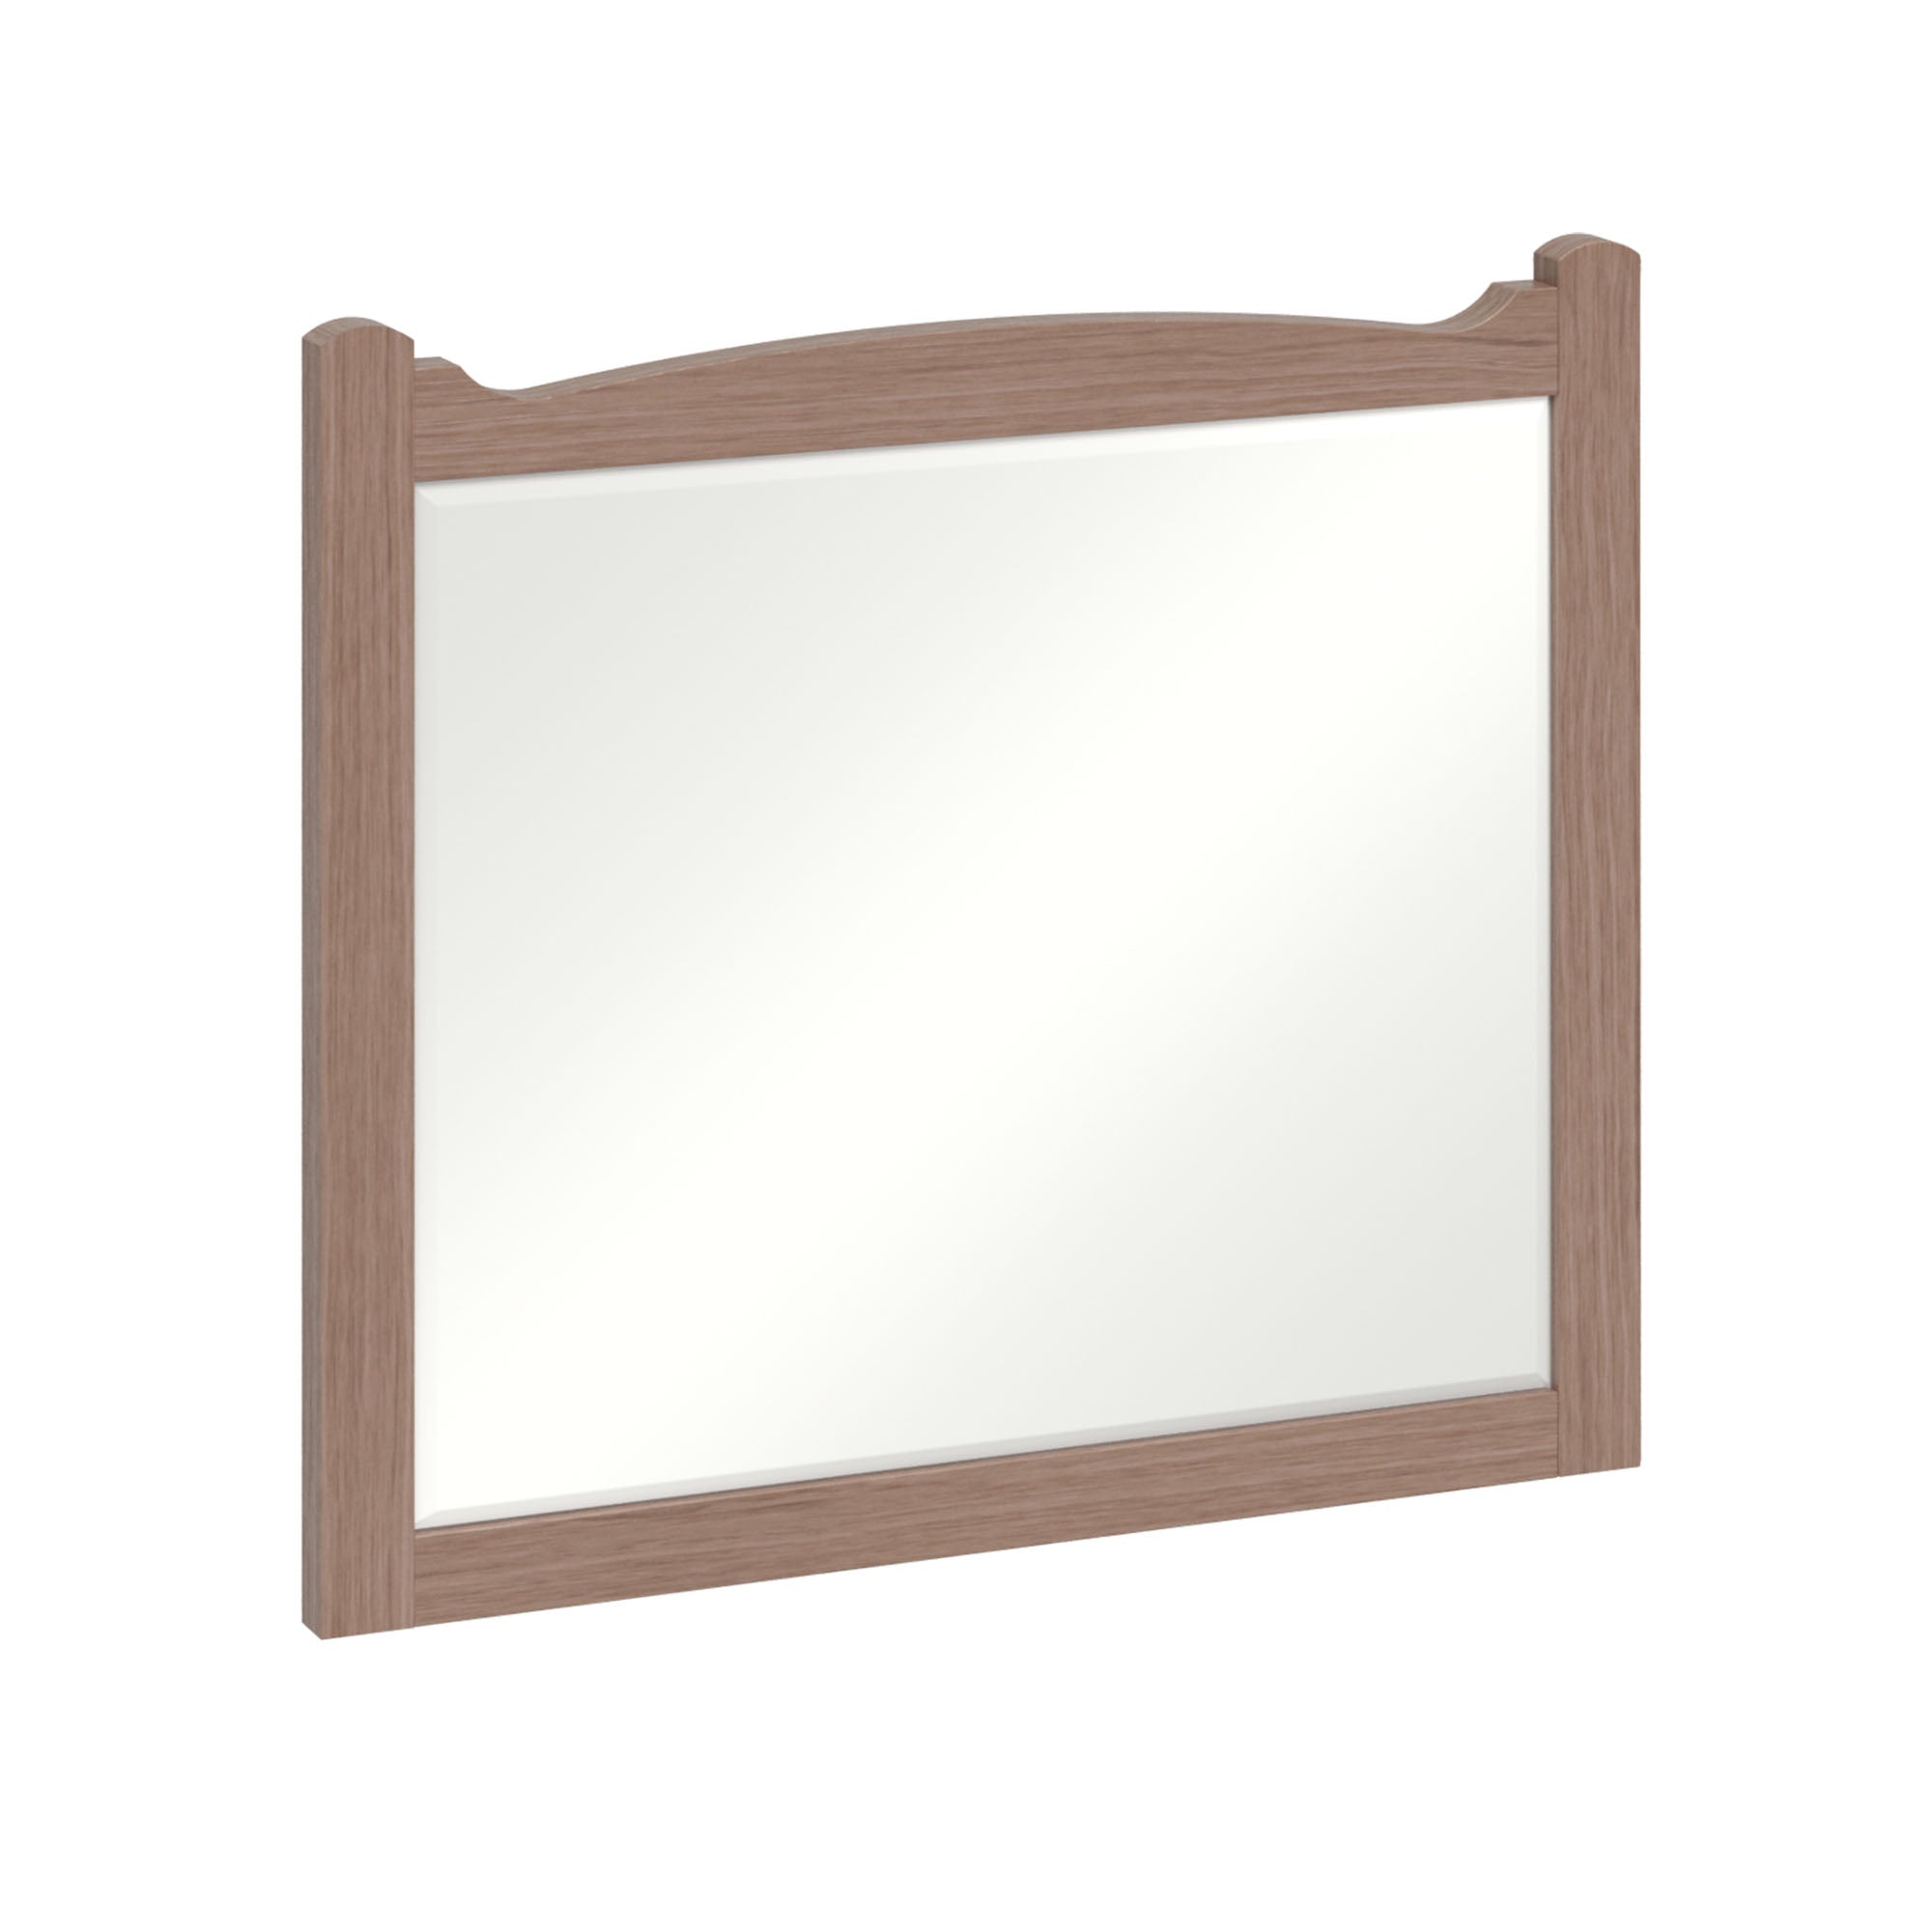 burlington guild 600 framed bathroom mirror dark oak